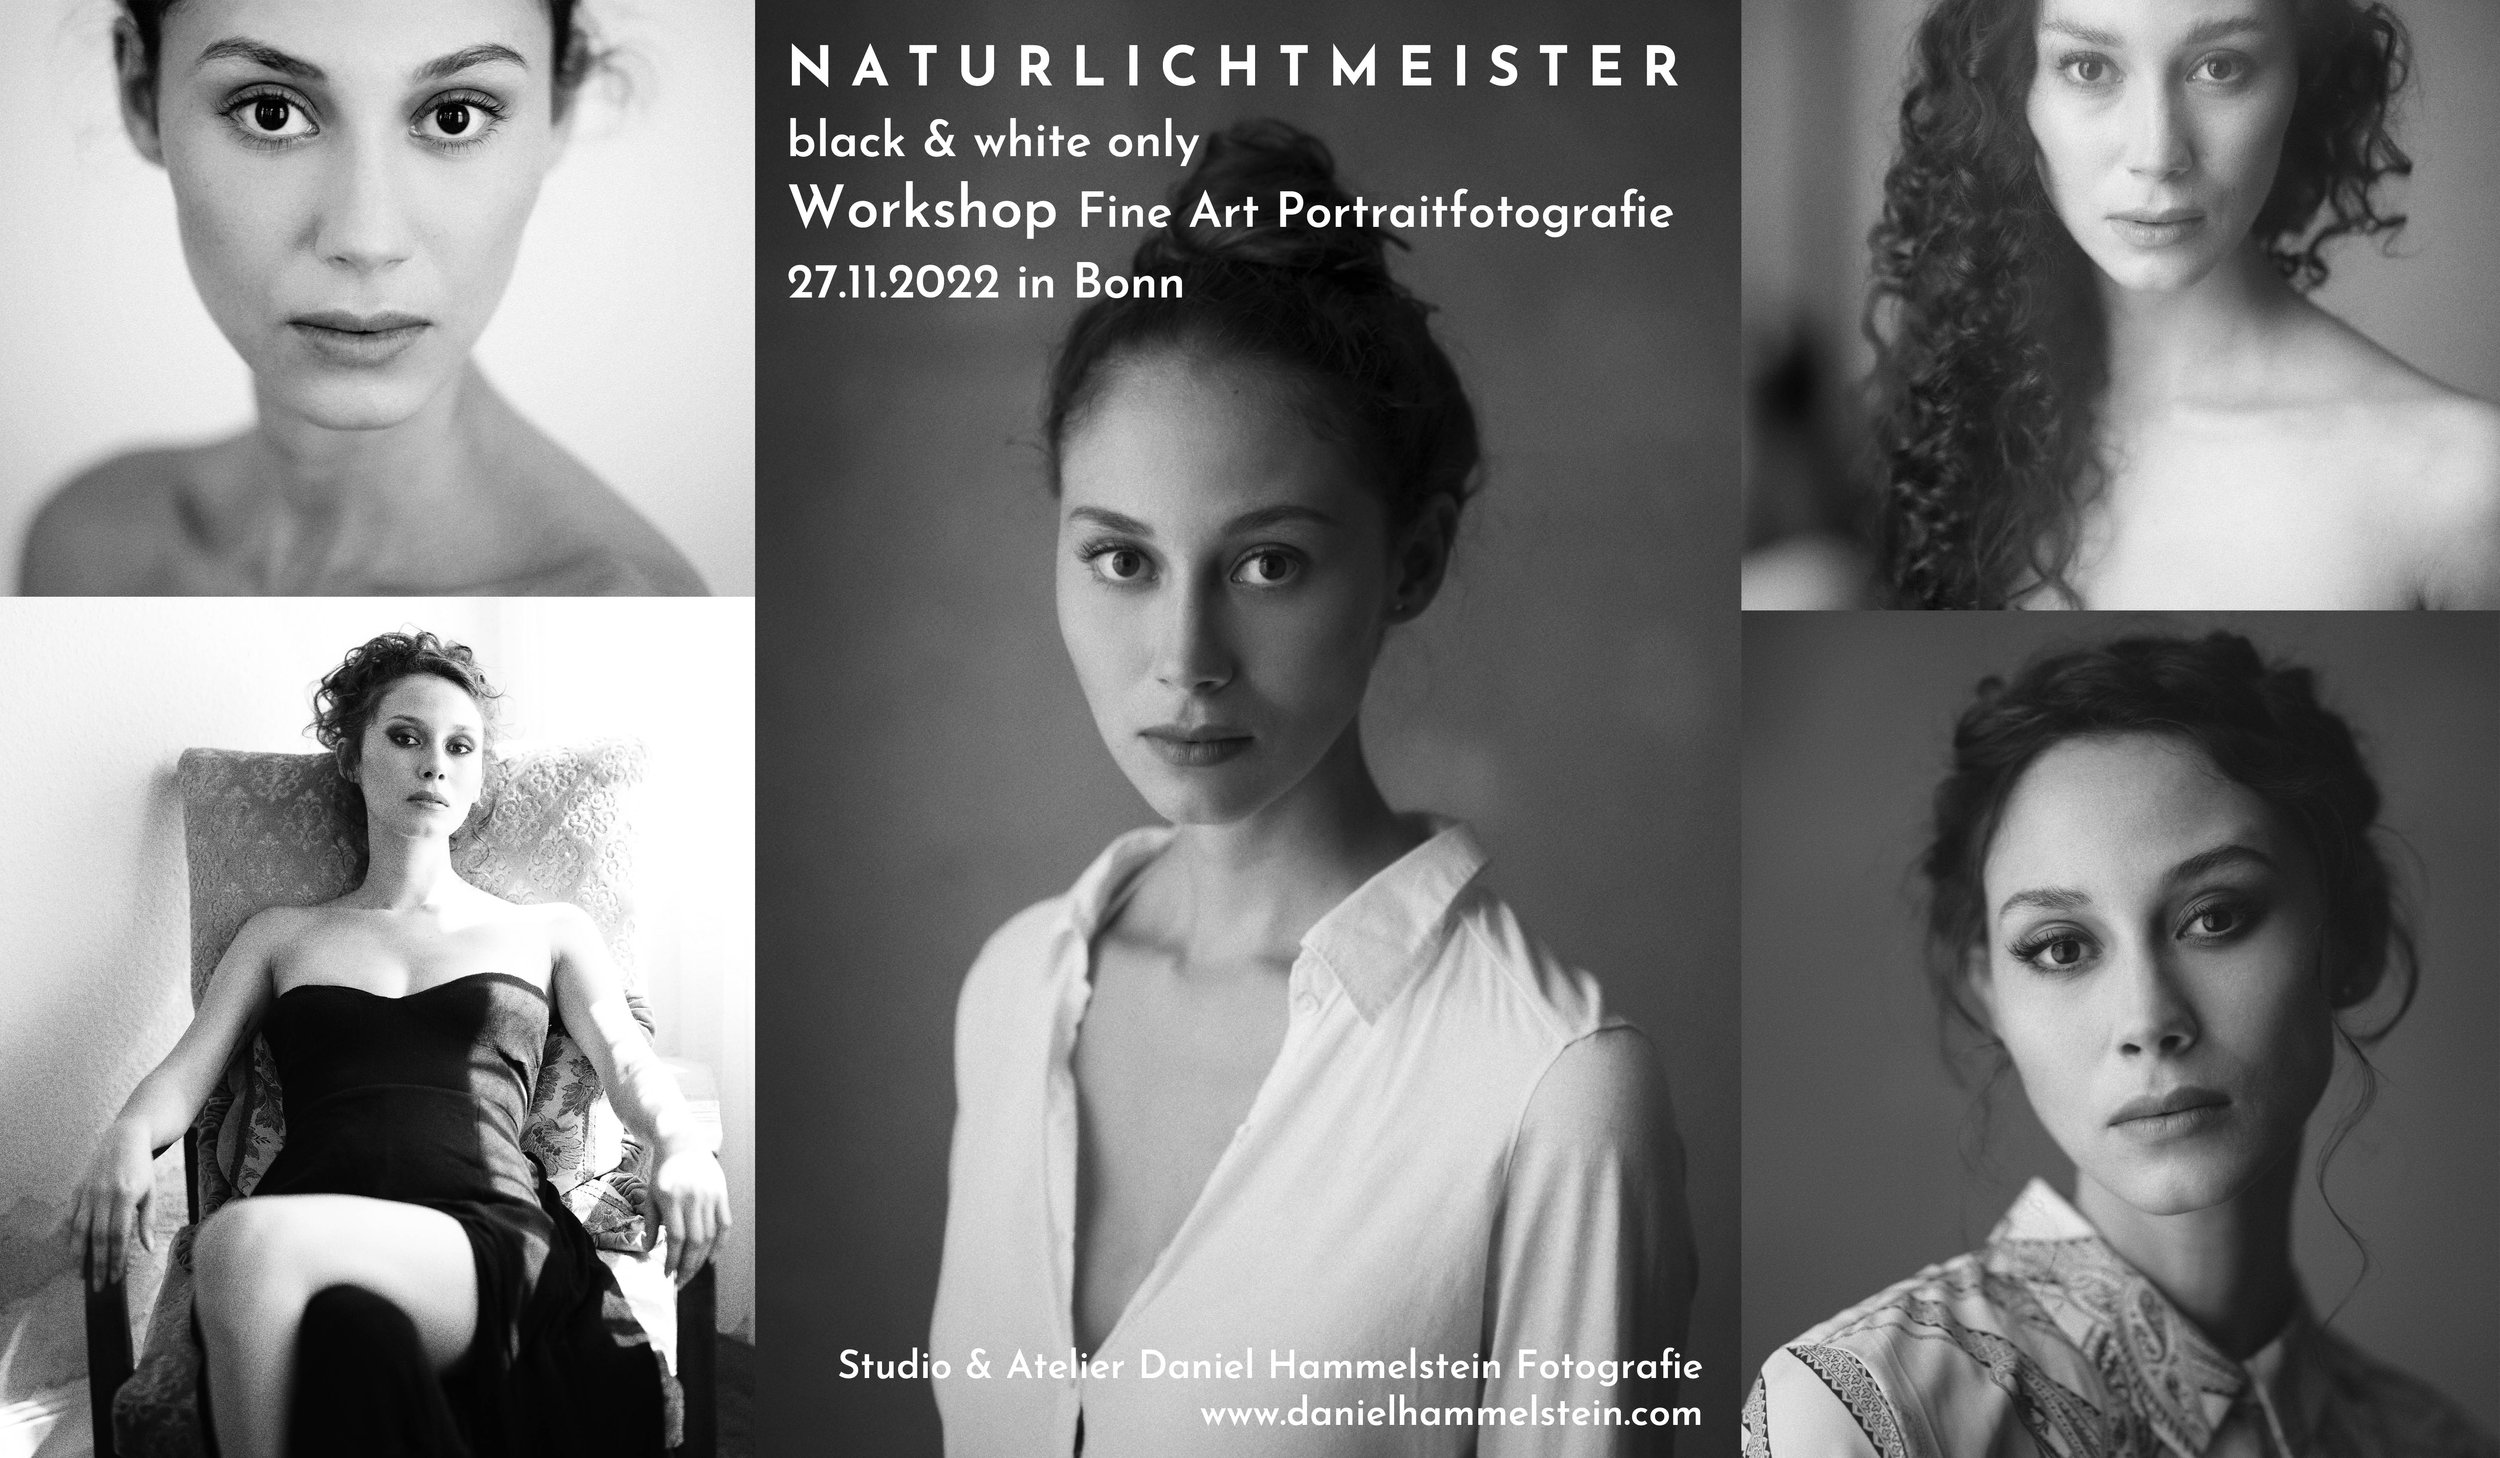 Naturlichtmeister Workshop November 2022 Daniel Hammelstein Portrait Workshop Portraitfotografie Schwarzweissfotografie Fotoworkshop Fotokurs Bonn Köln Düsseldorf NRW.jpg